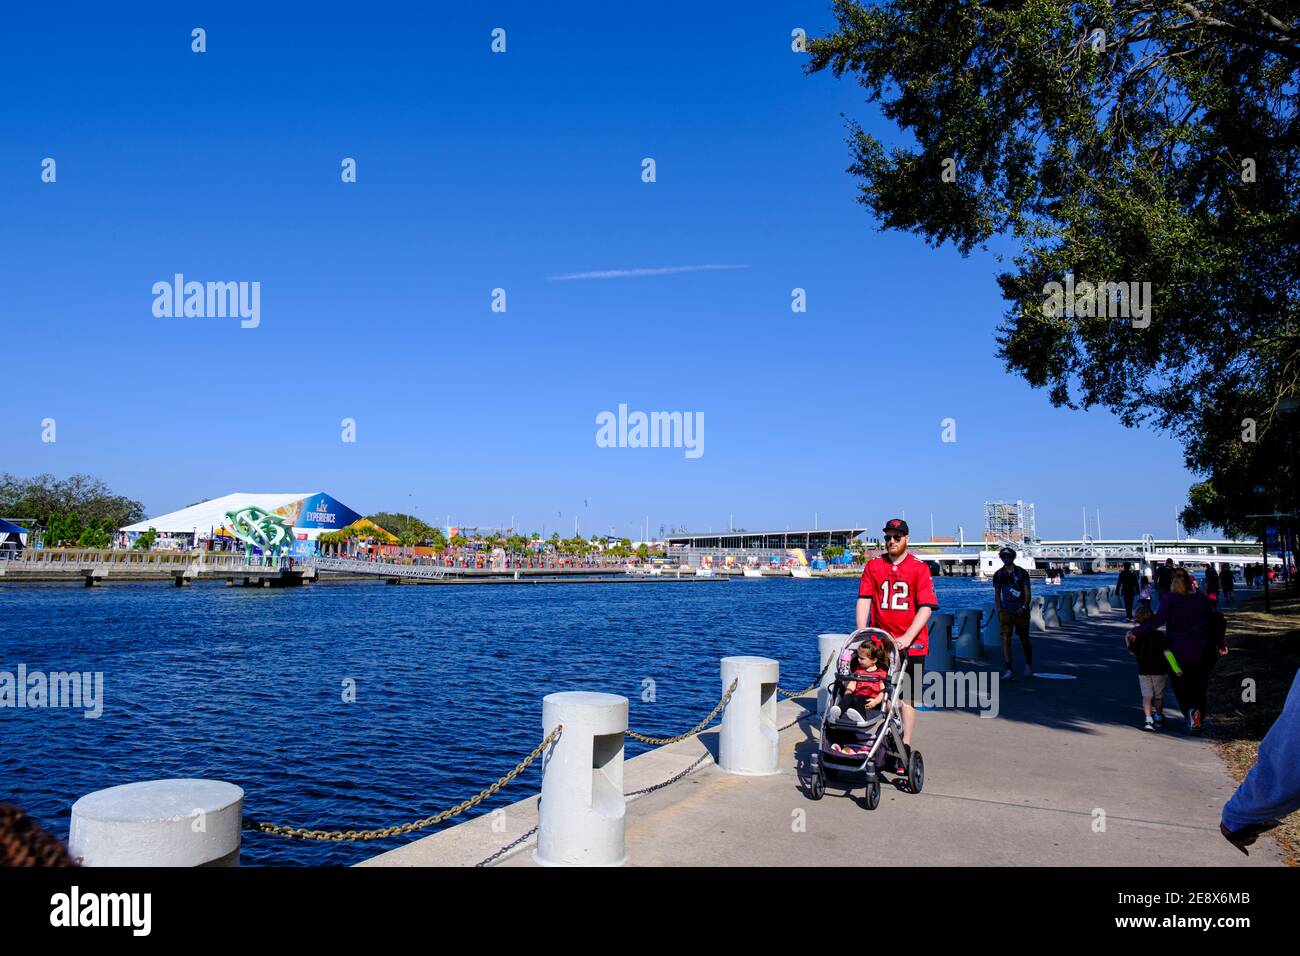 Man pushing stroller down Tampa Riverwalk - Super Bowl LV (55) Tampa, Florida Stock Photo